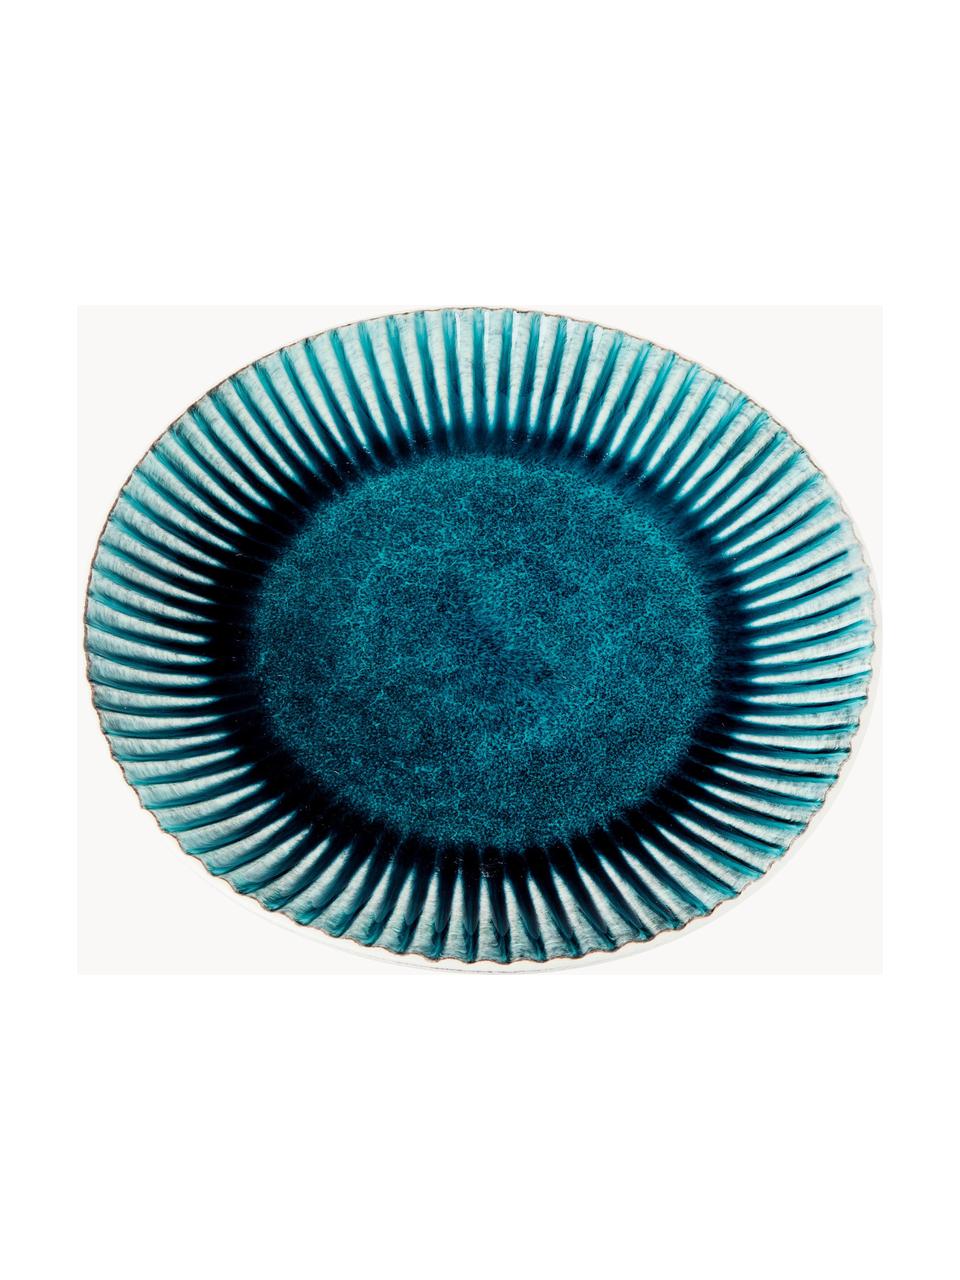 Platos llanos artesanales Mustique, 4 uds., Cerámica de gres esmaltada, Turquesa, azul oscuro, blanco, Ø 29 cm